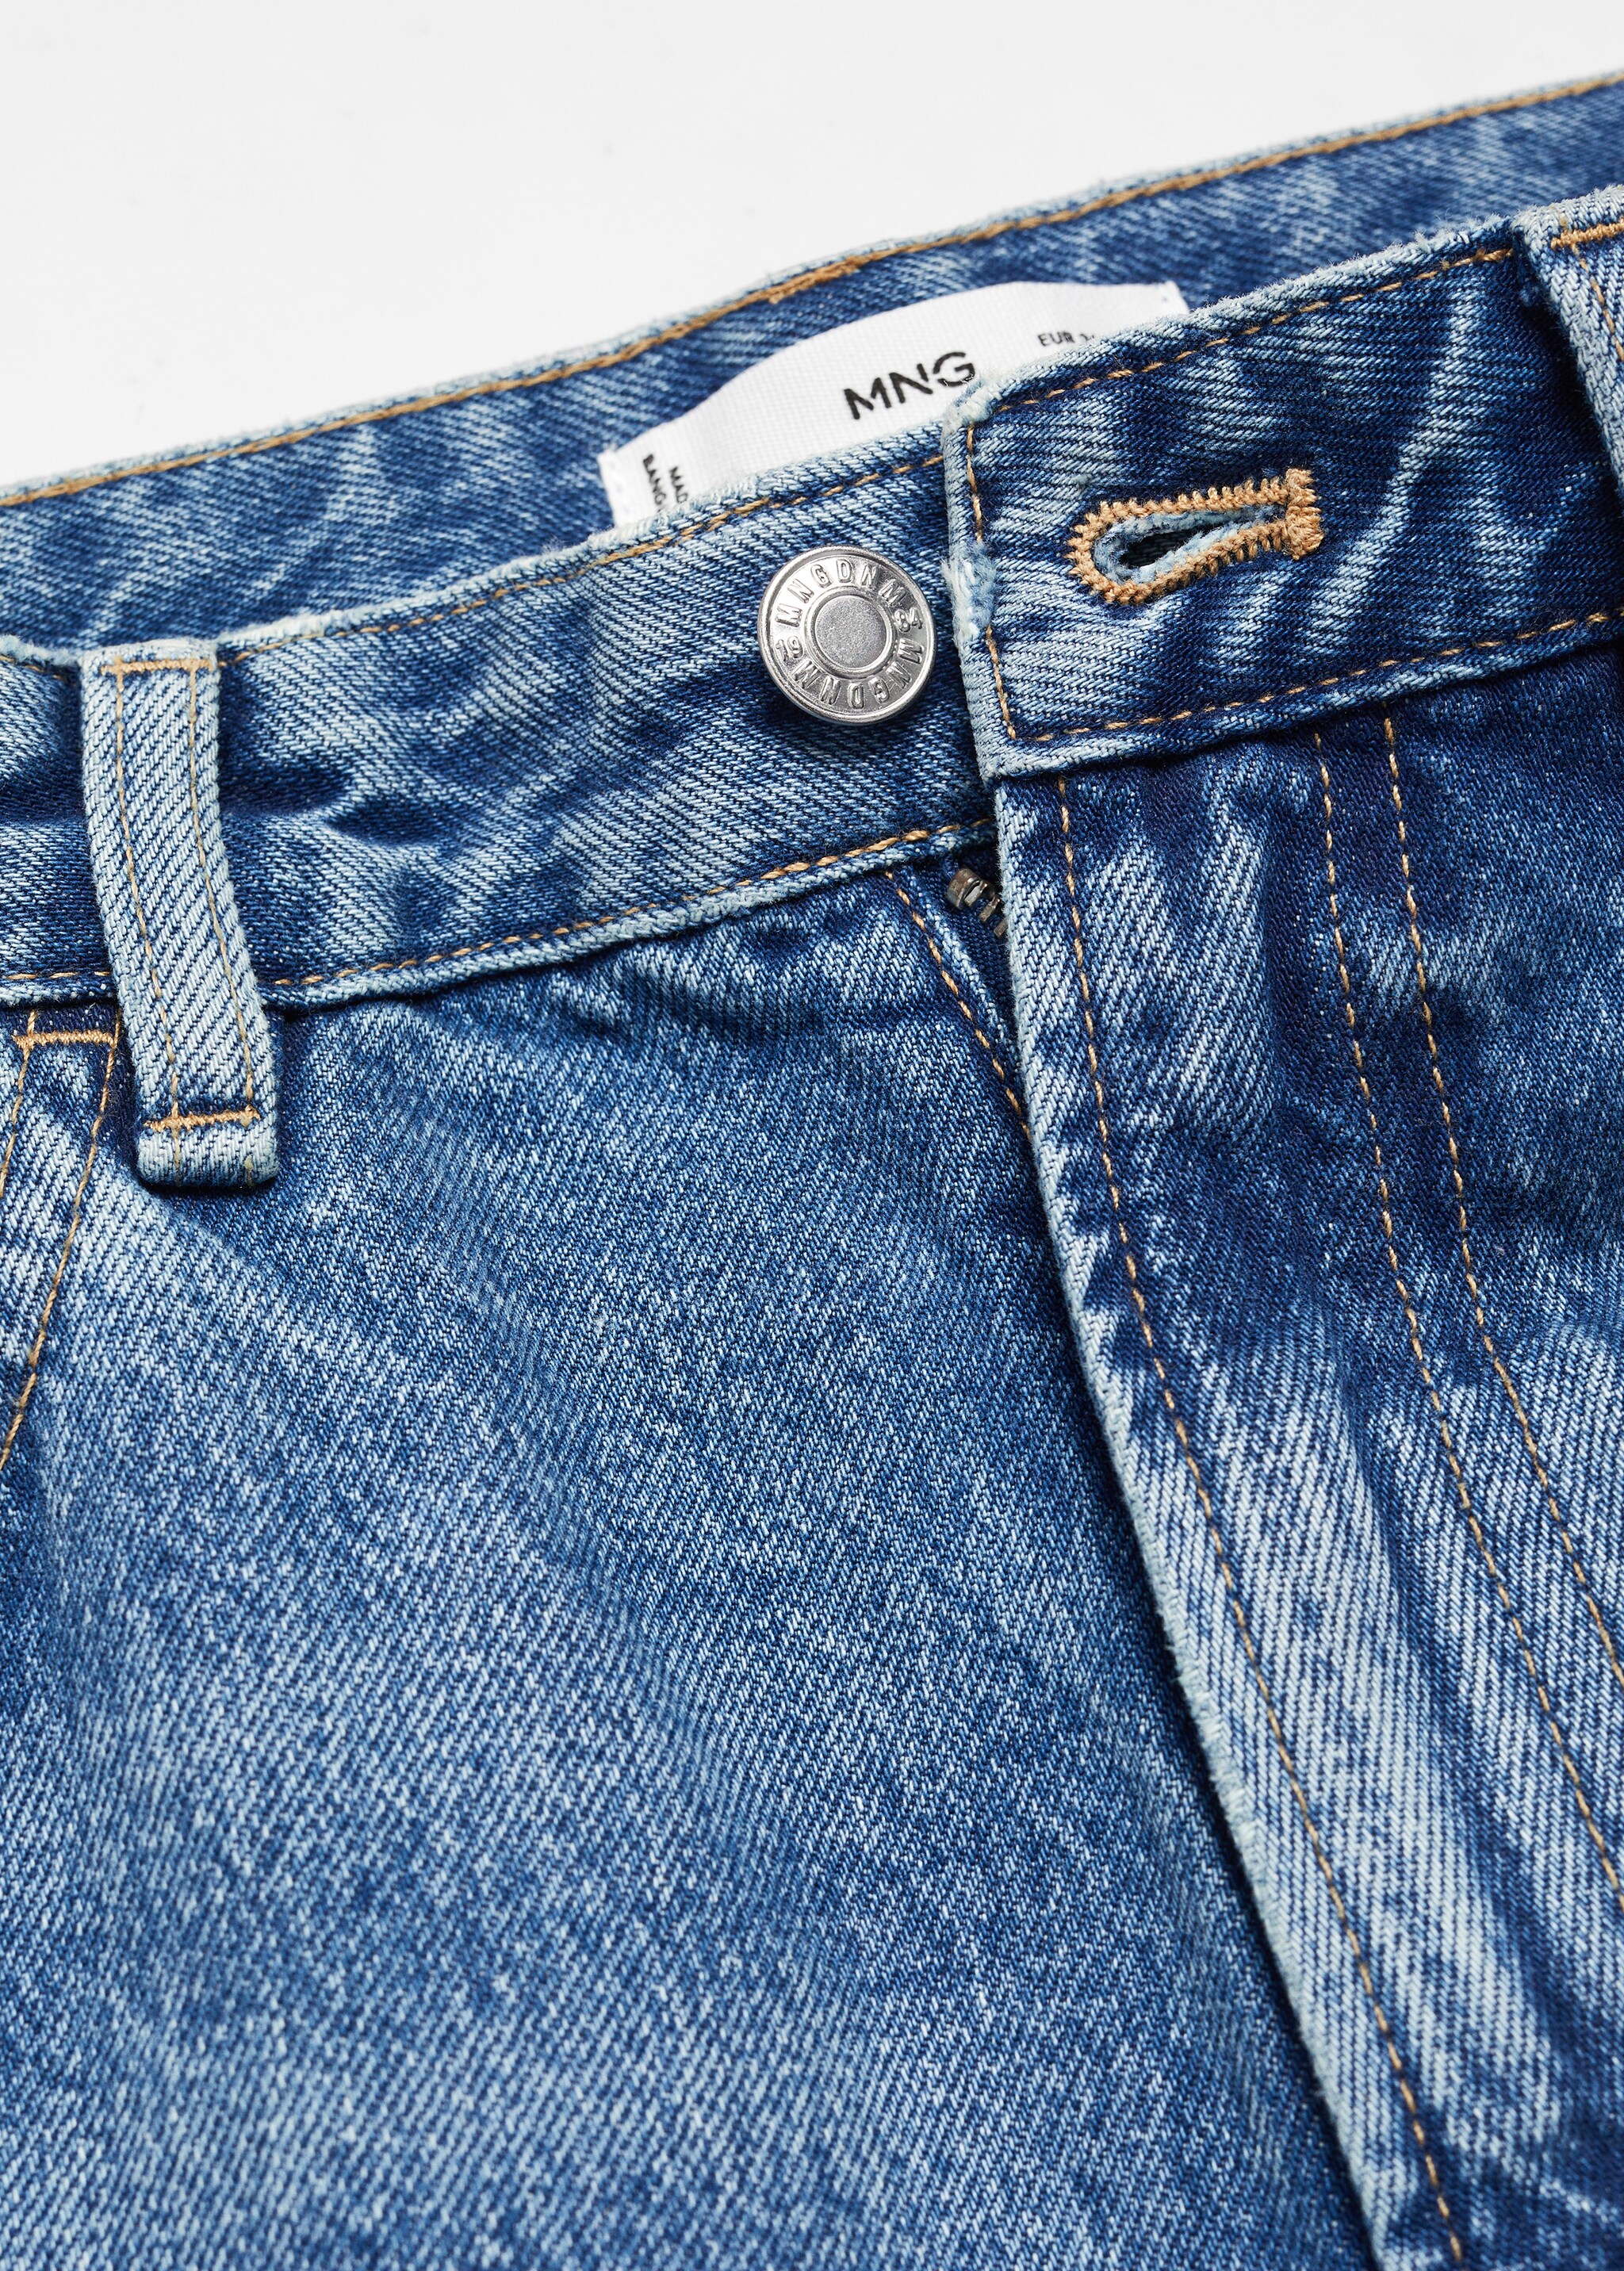 Jeans rectos tiro medio - Detalle del artículo 8